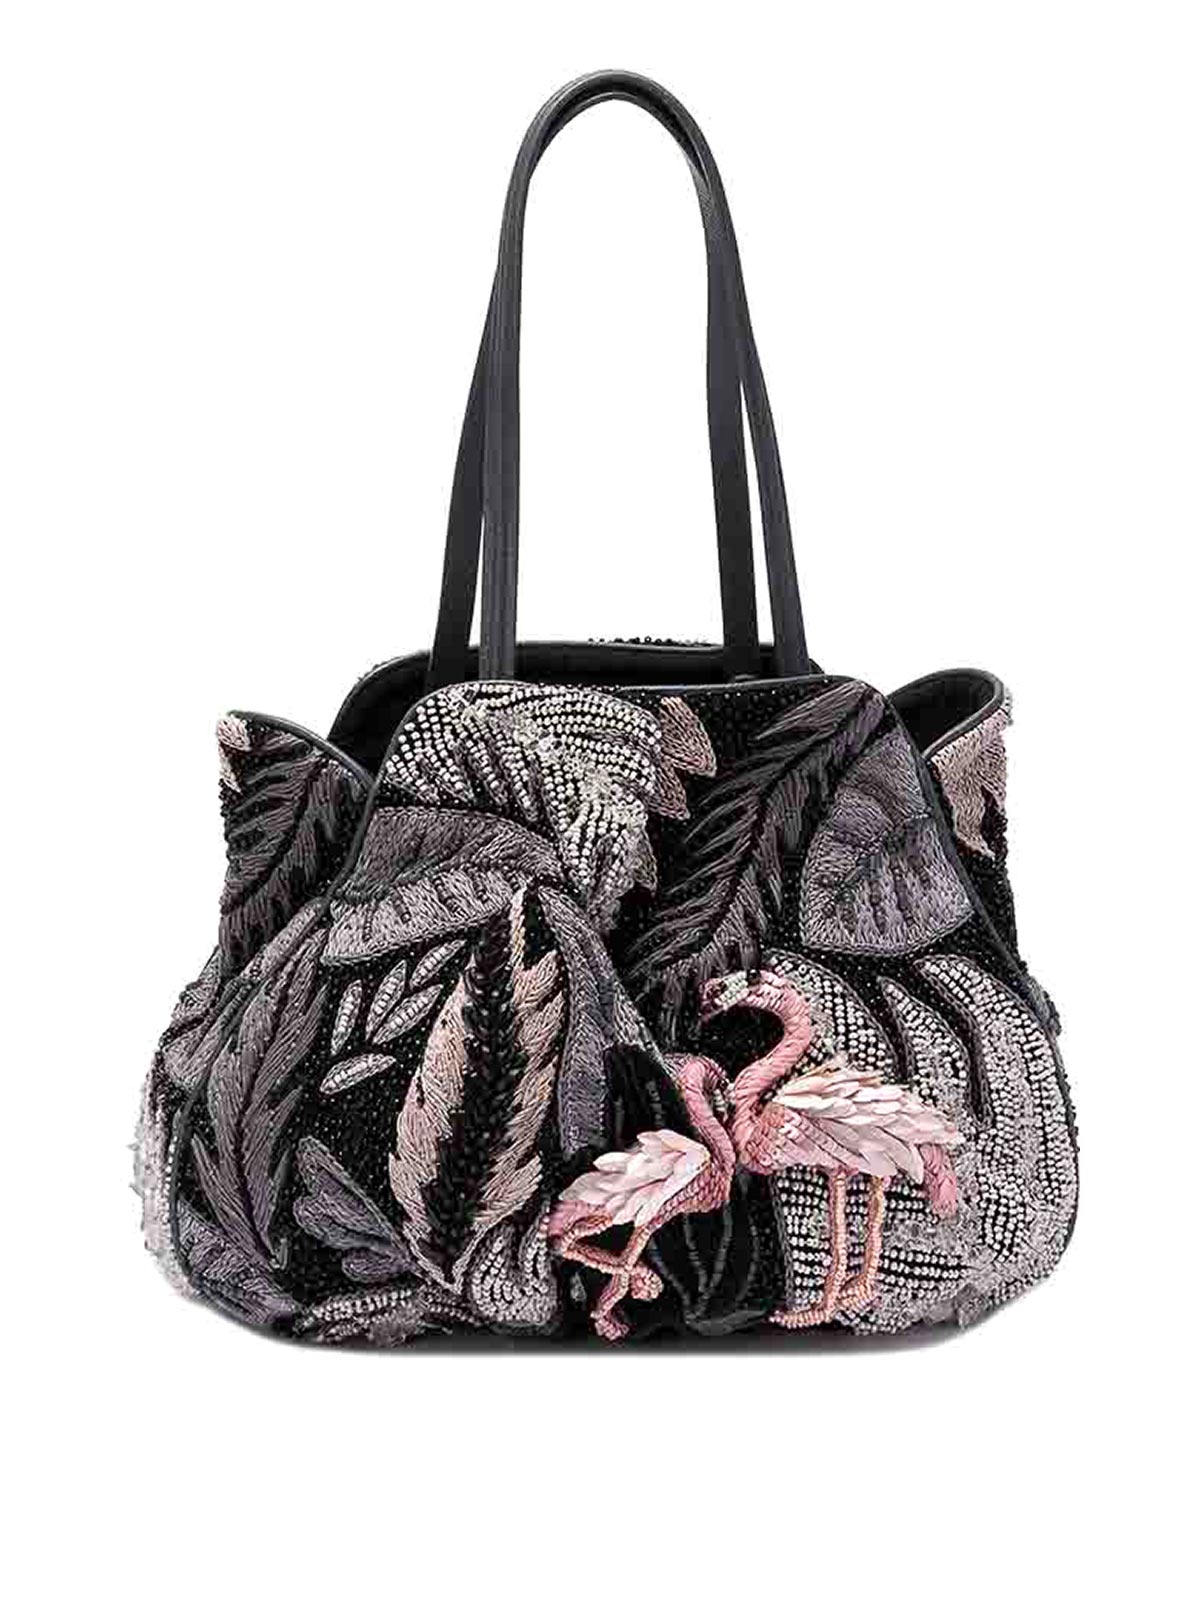 Jamin Puech Tropical Bag Bag In Black